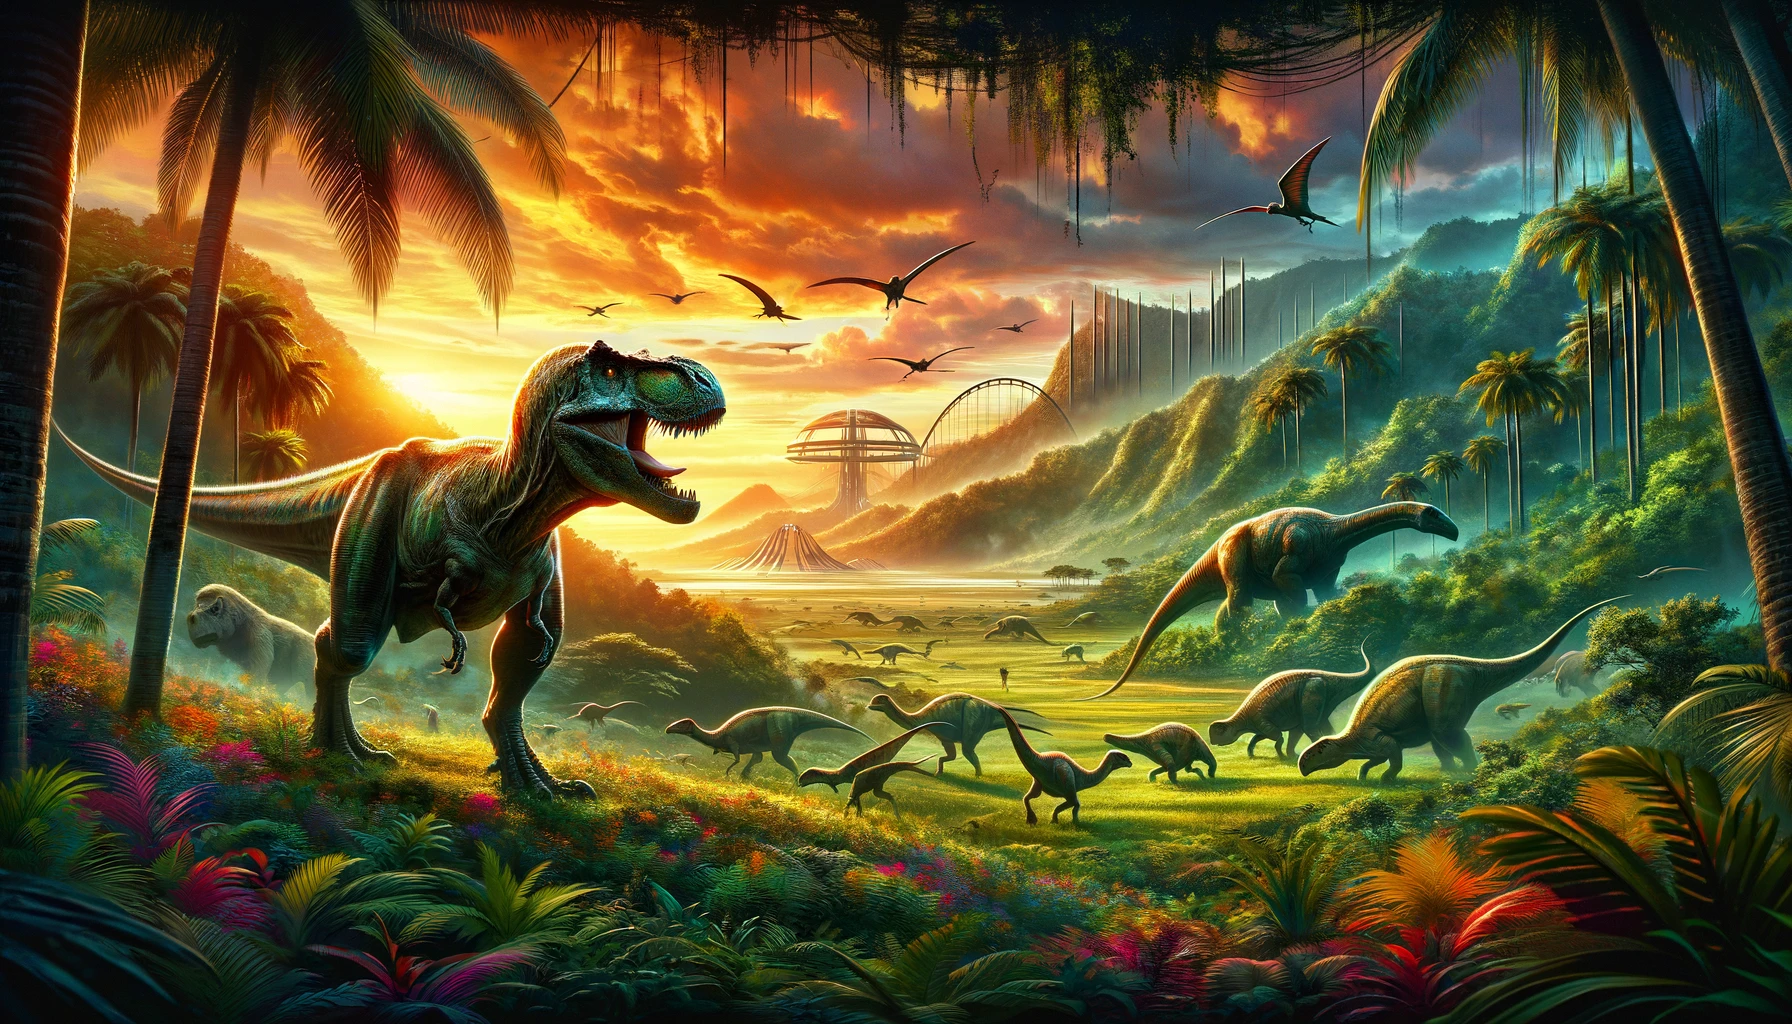 Der nächste Film der Jurassic World Series soll im Juli 2025 in die Kinos kommen